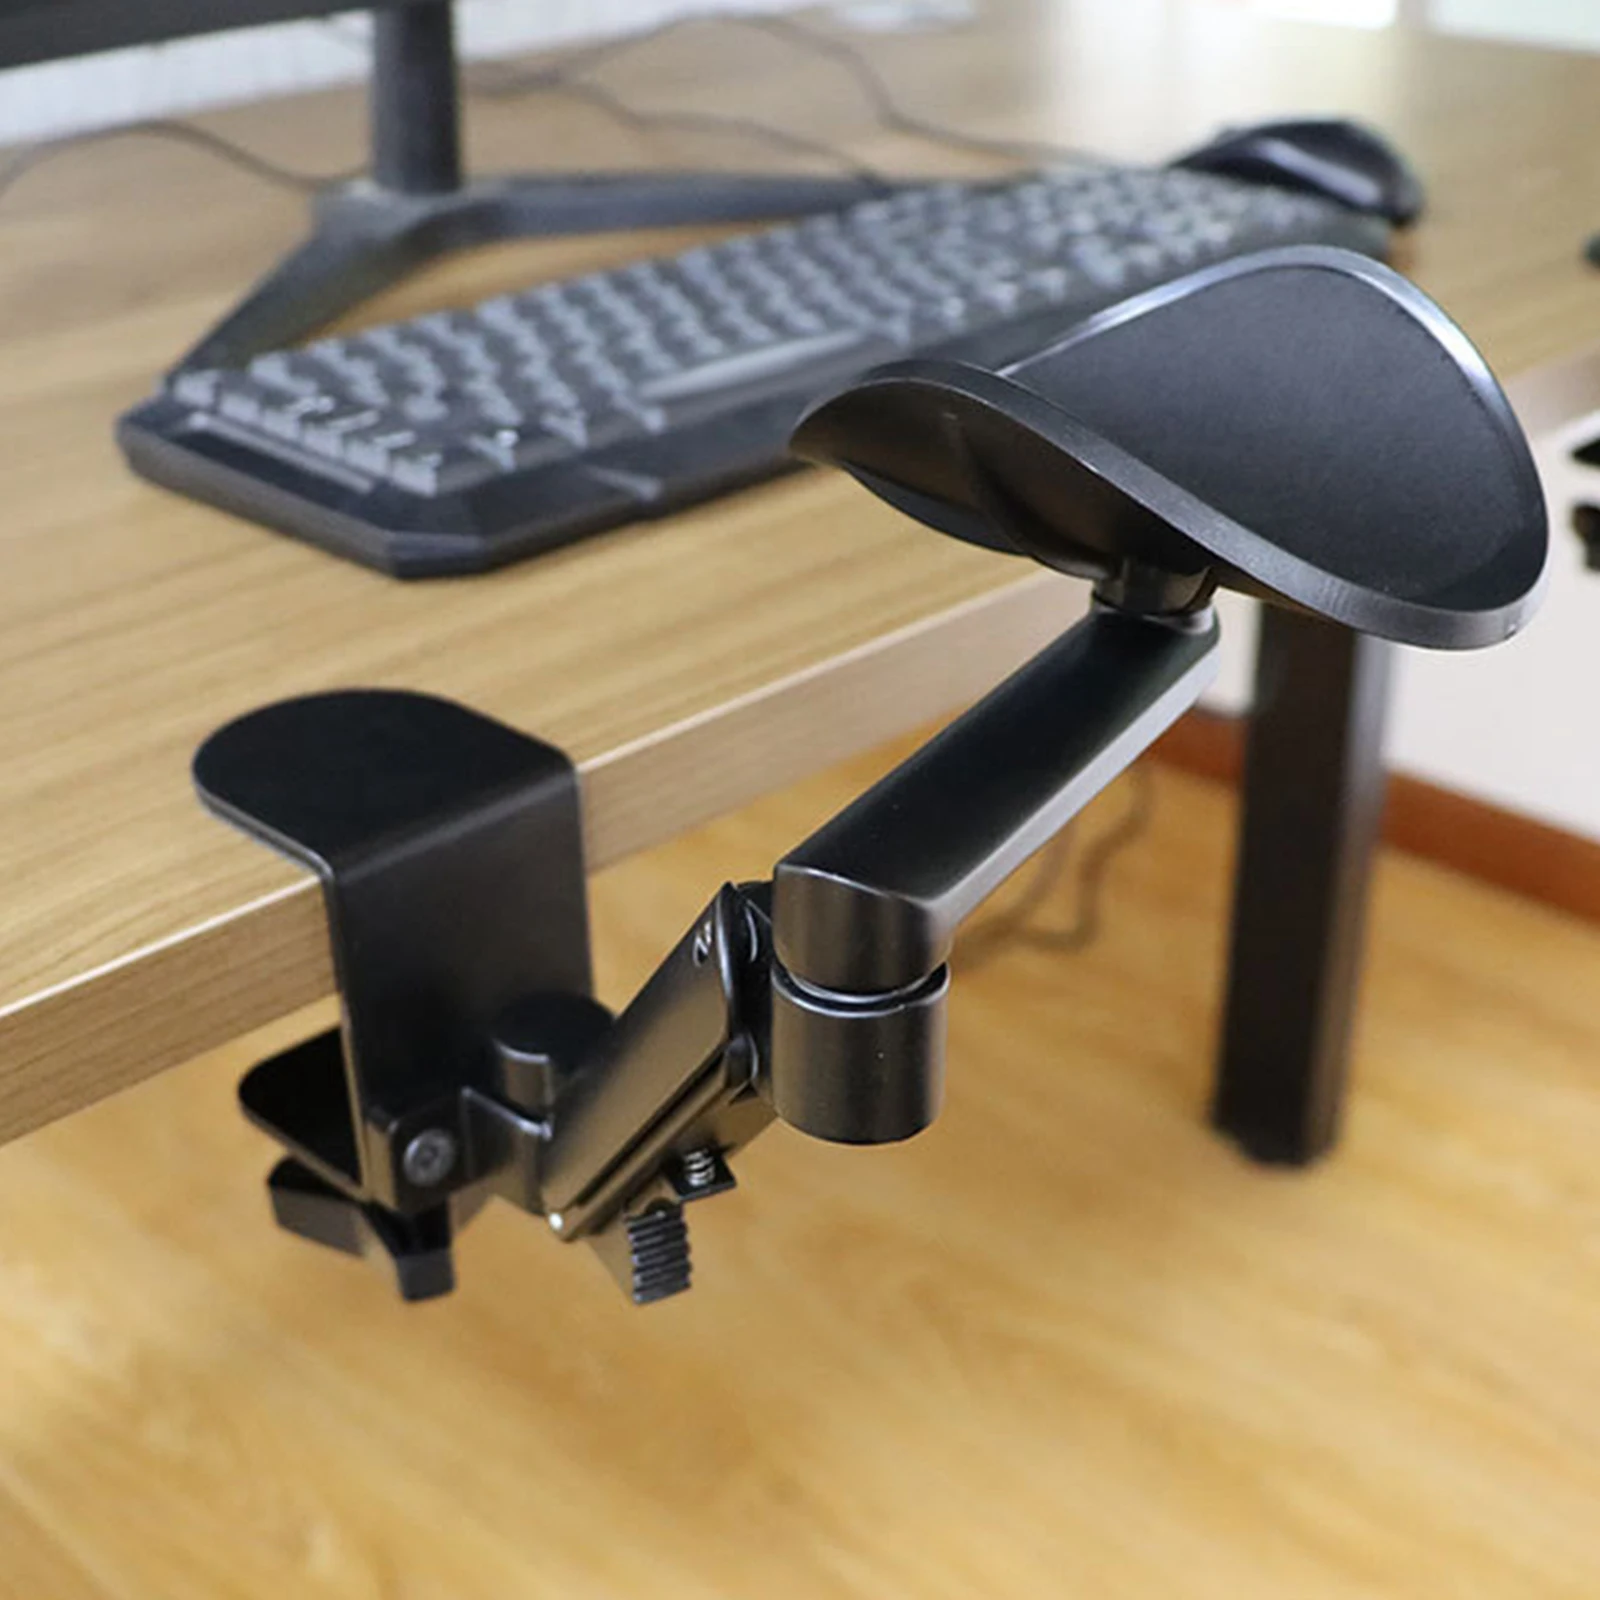 Arm Rest Support for Desk Ergonomic Easy to Install Adjustable Wrist Cushion Computer Armrest Bracket for Office Laptop Desk